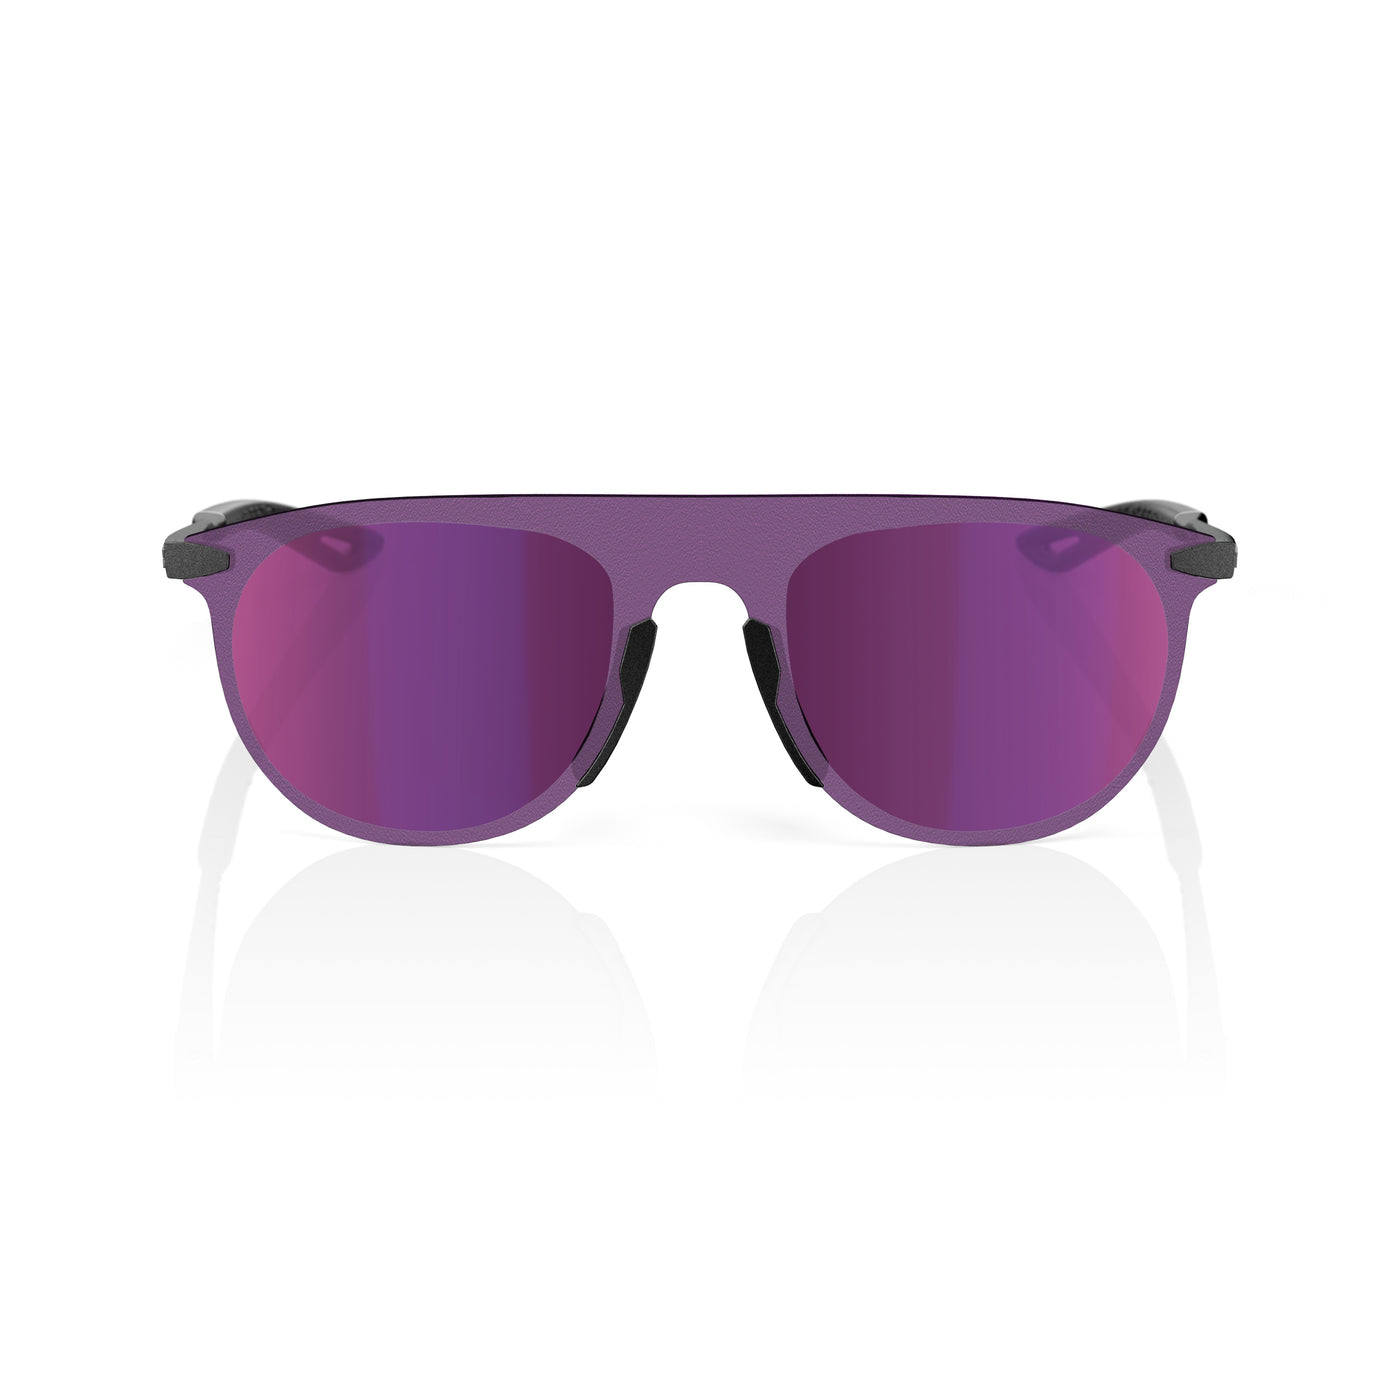 LEGERE® COIL Matte Gunmetal Purple Multilayer Mirror Lens